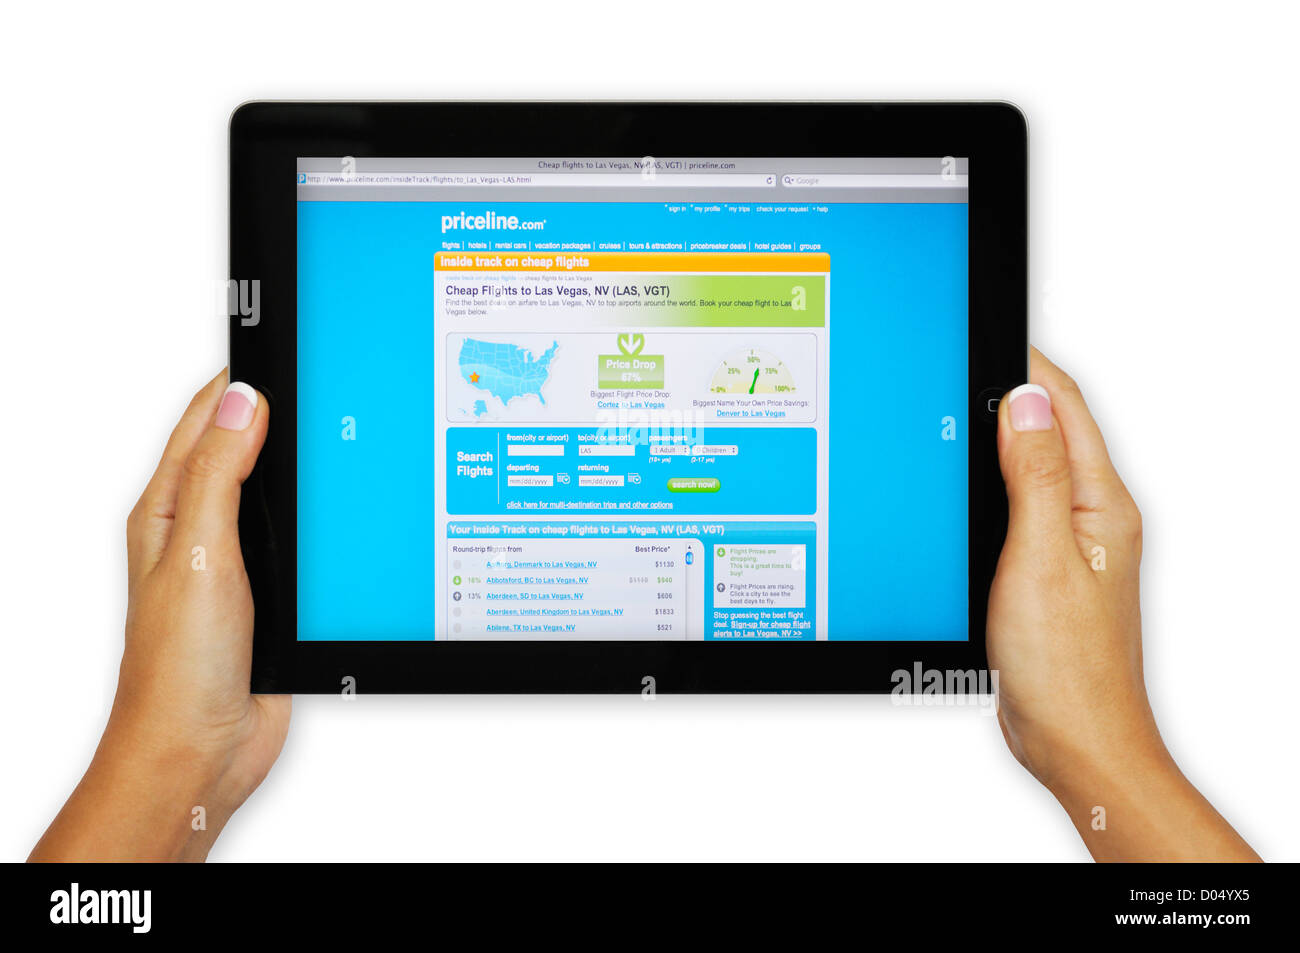 iPad screen showing Priceline.com website - deep discounts on travel arrangements Stock Photo